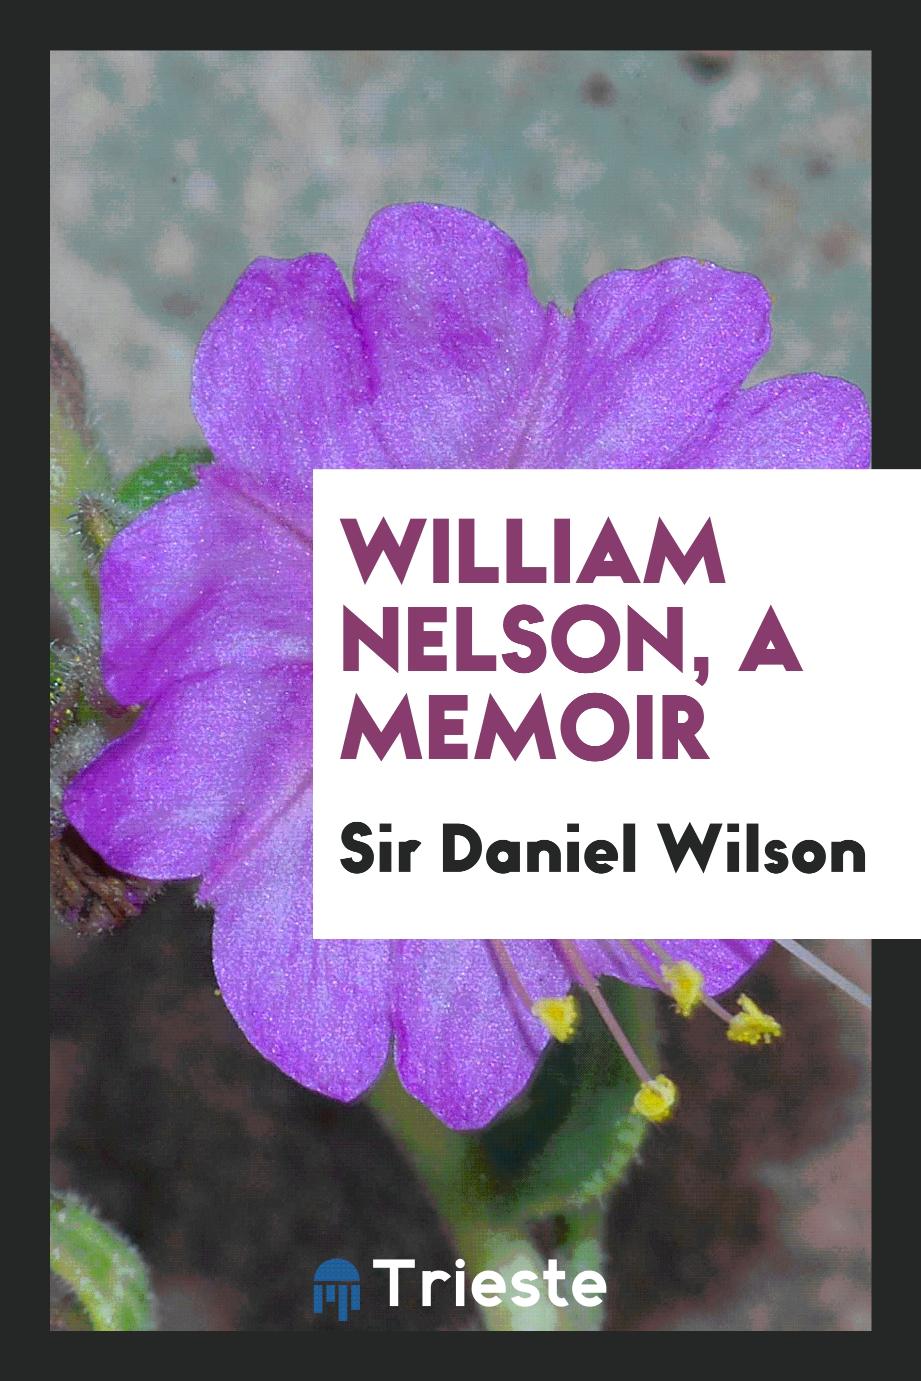 William Nelson, a memoir